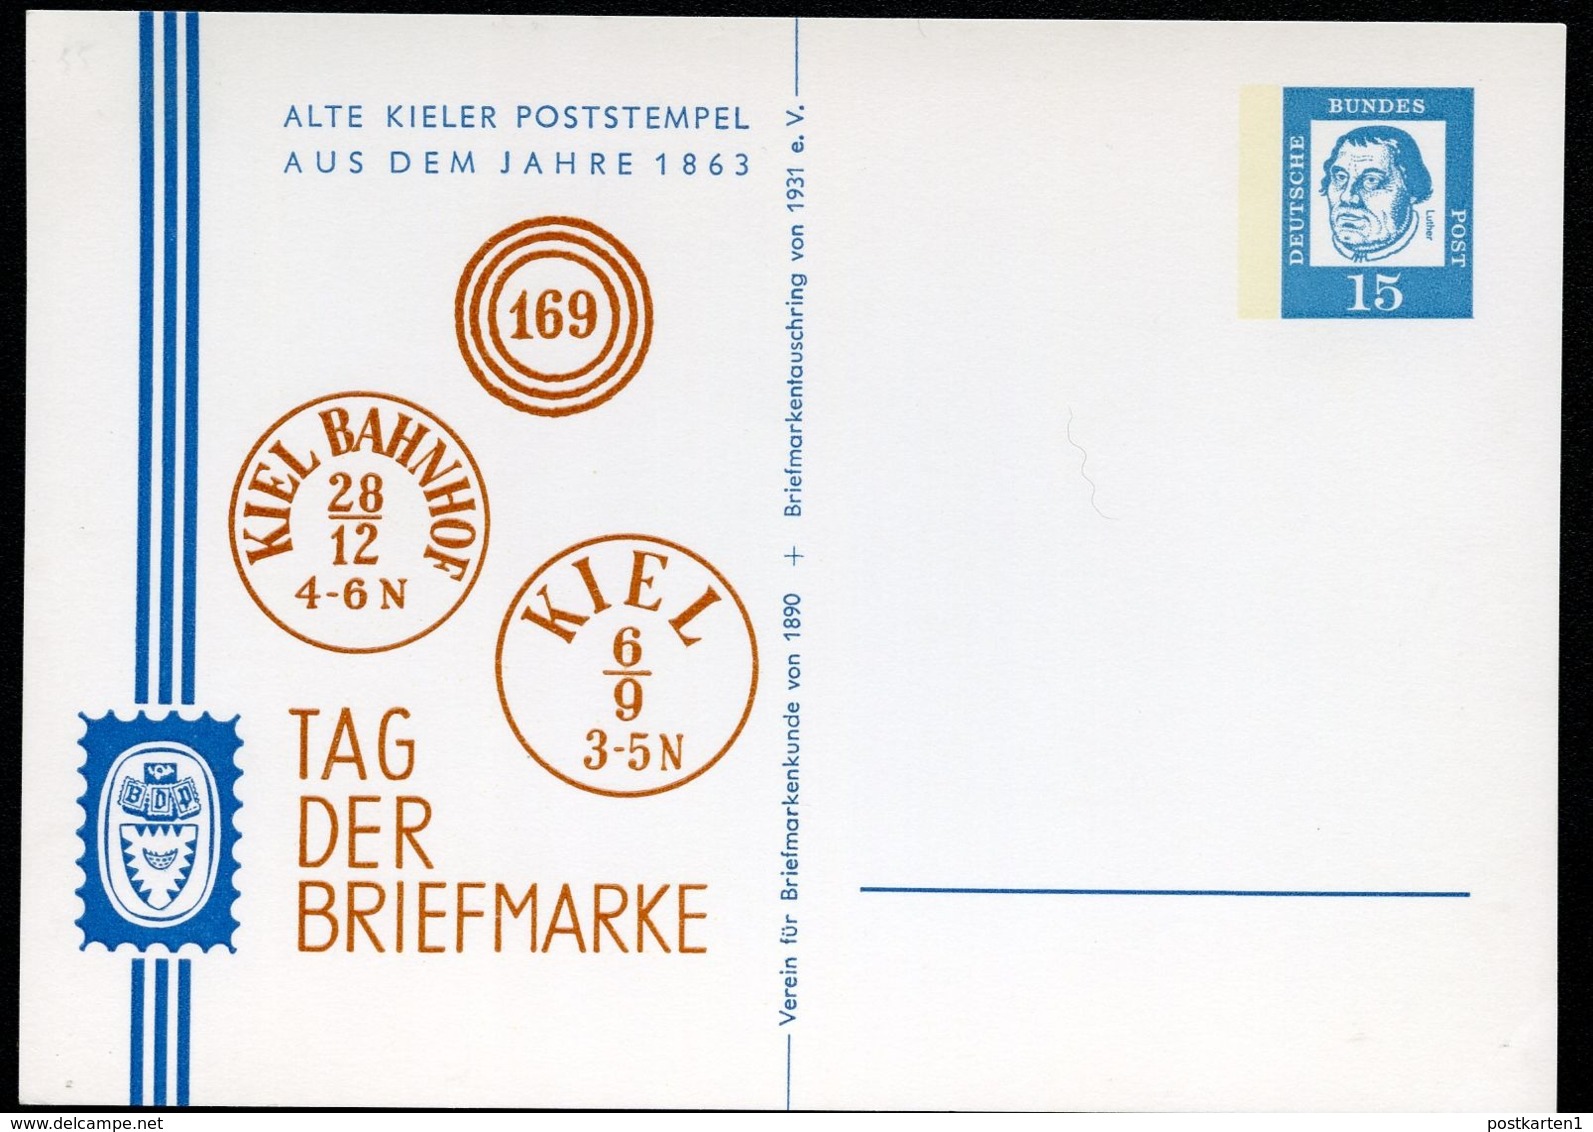 Bund PP29 B2/001 POSTSTEMPEL KIEL 1863  NGK 16,00 € - Private Postcards - Mint